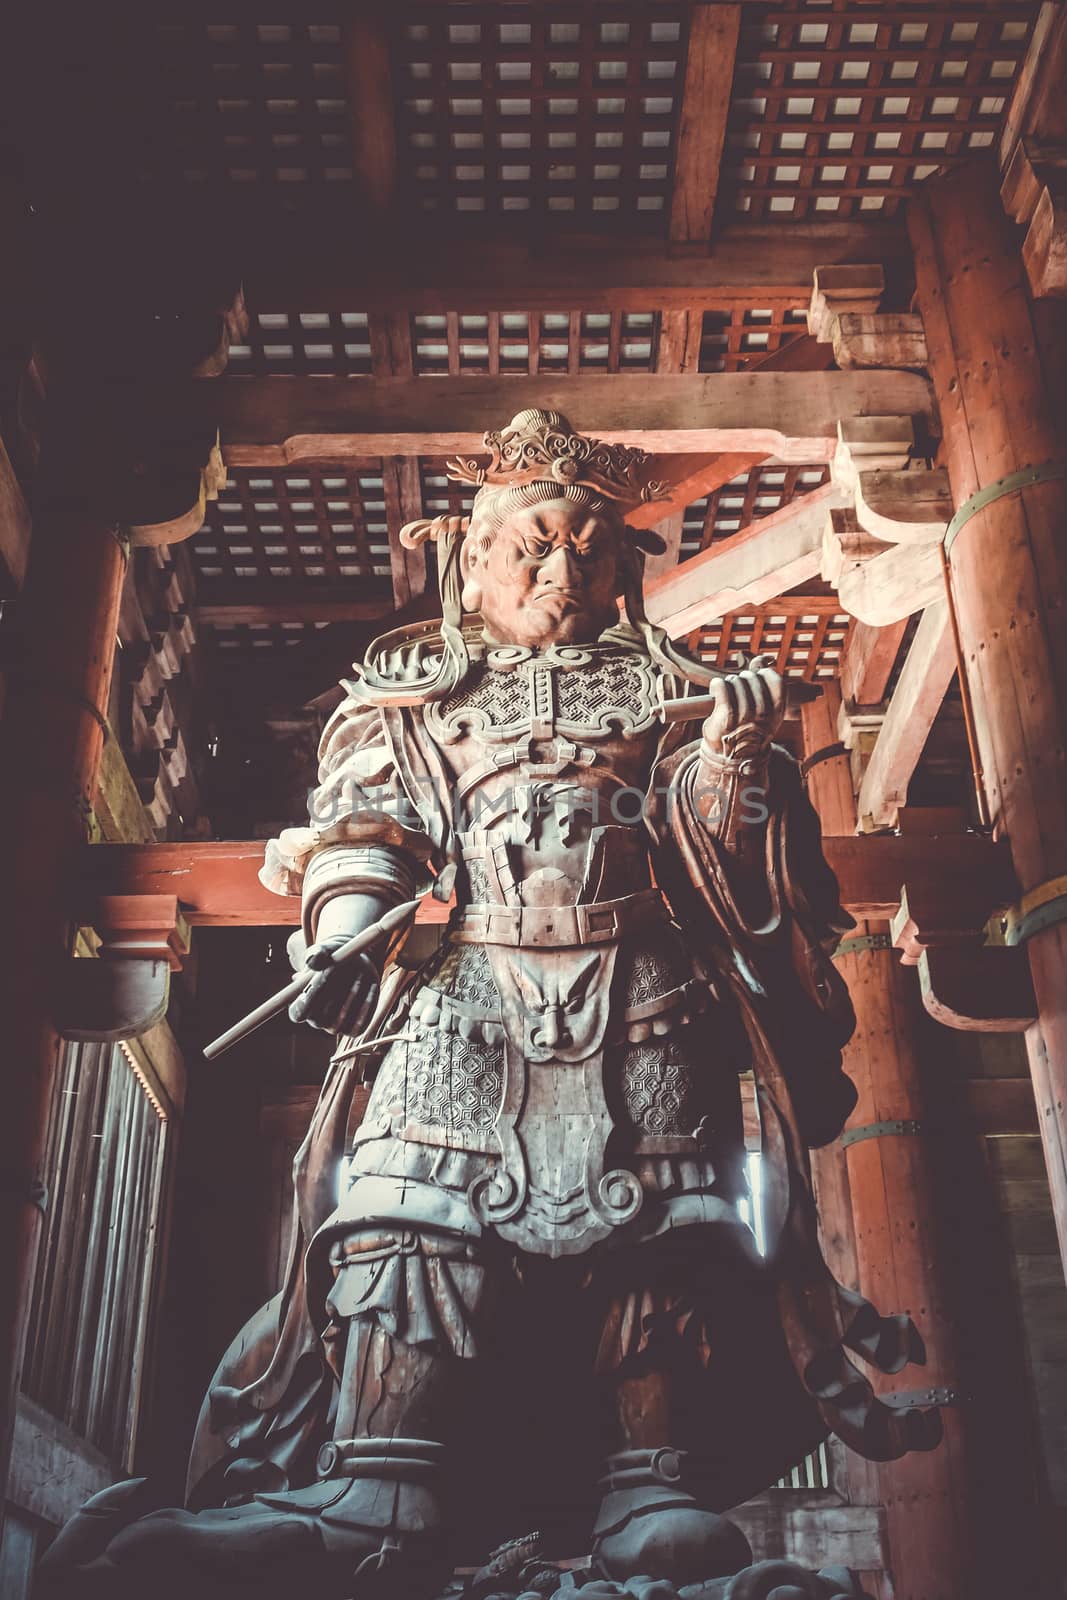 Komokuten statue in Daibutsu-den Todai-ji temple, Nara, Japan by daboost